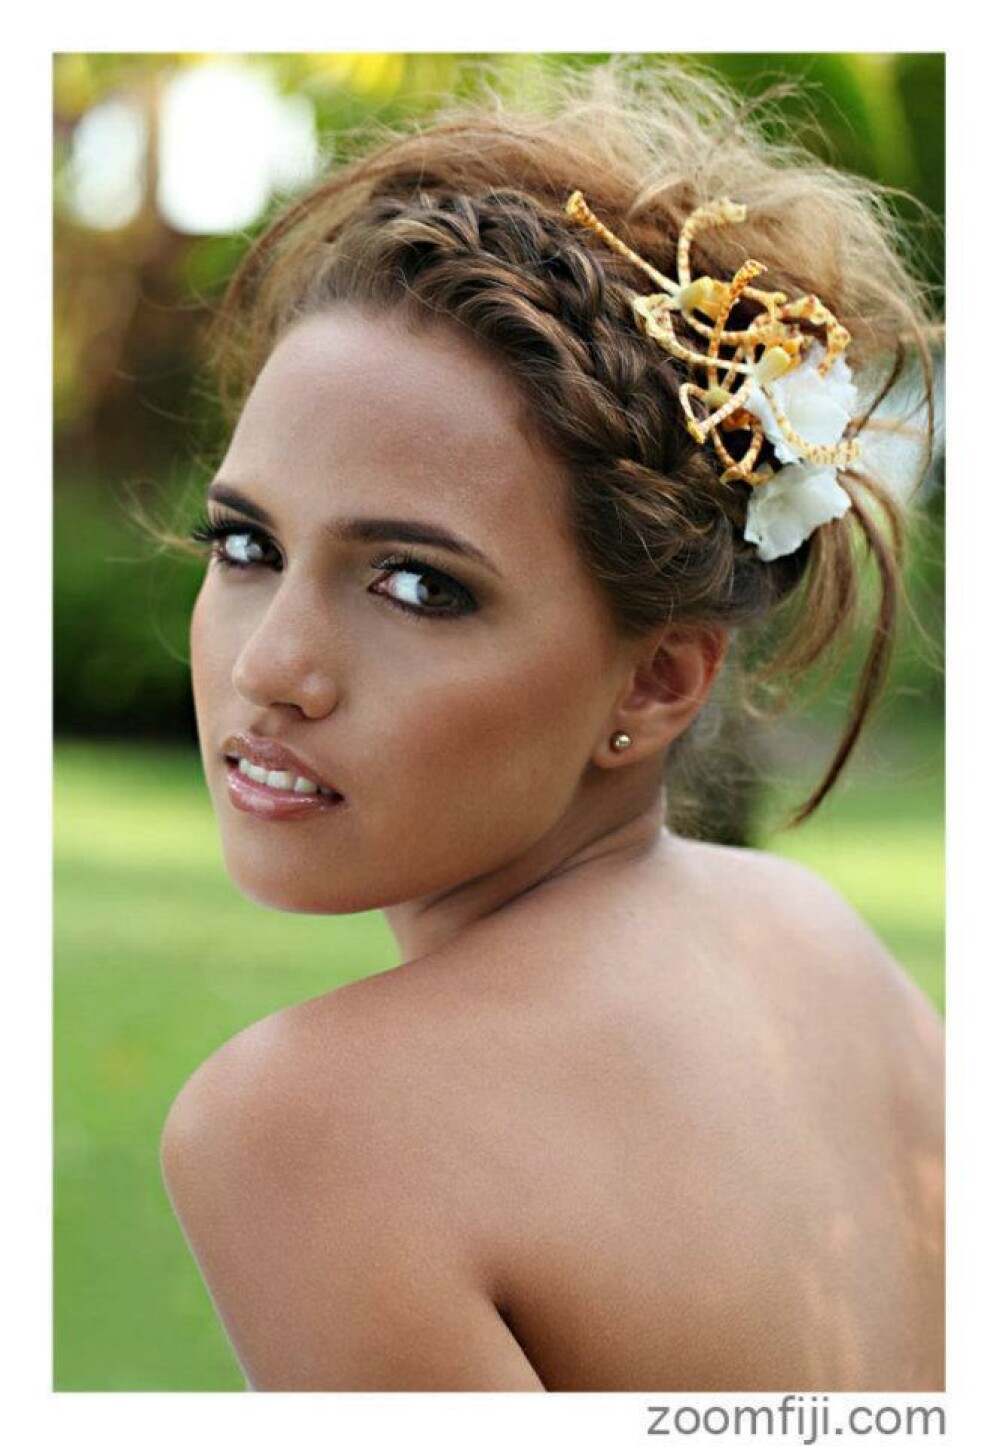 A pierdut coroana Miss Fiji pentru ca era prea alba si prea blonda. Explicatia organizatorilor - Imaginea 3